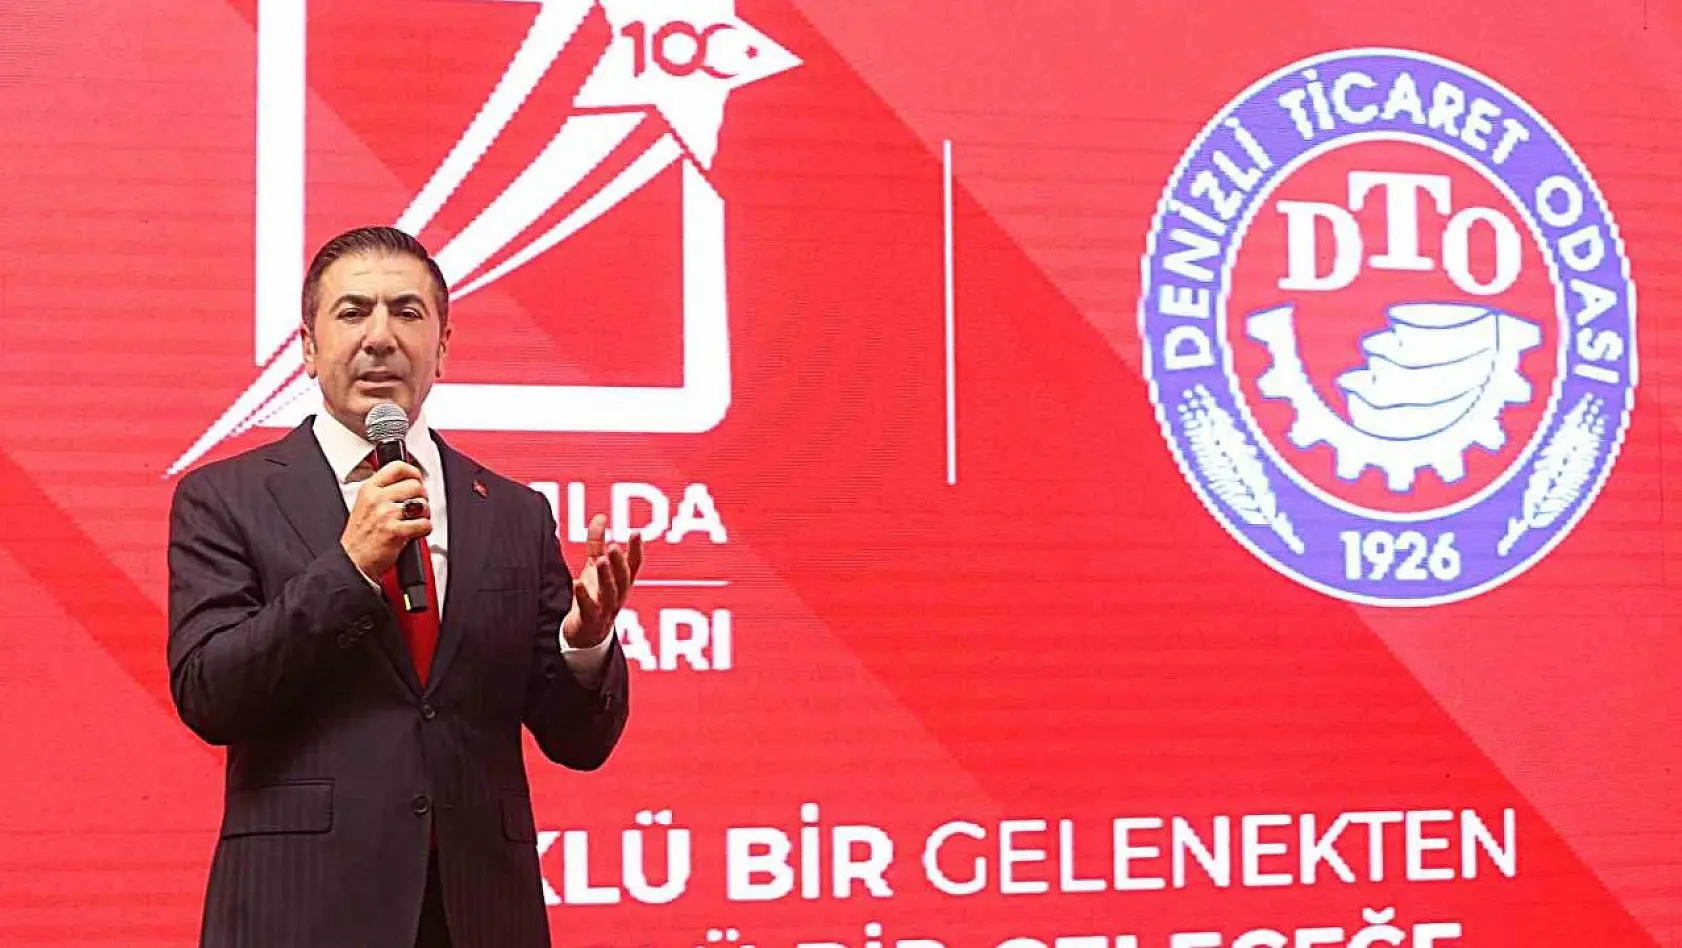 DTO Başkanı Erdoğan'dan CHP Genel Başkanı Özel'e yalanlama